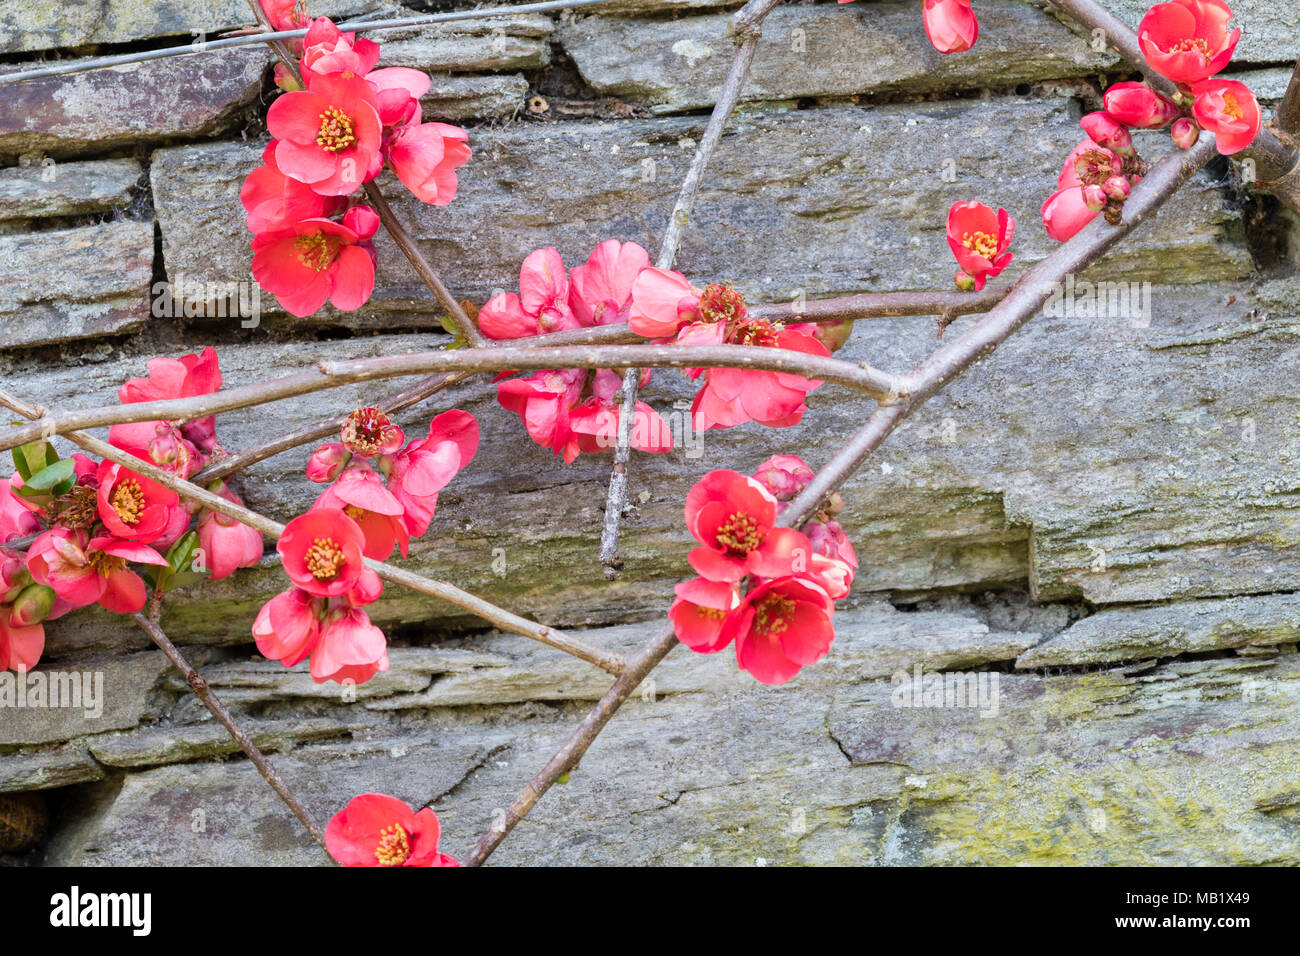 Wall entrenados arbusto con las flores de la primavera temprana de los membrillos japoneses, Chaenomeles speciosa 'Knap Hill Radiance' Foto de stock